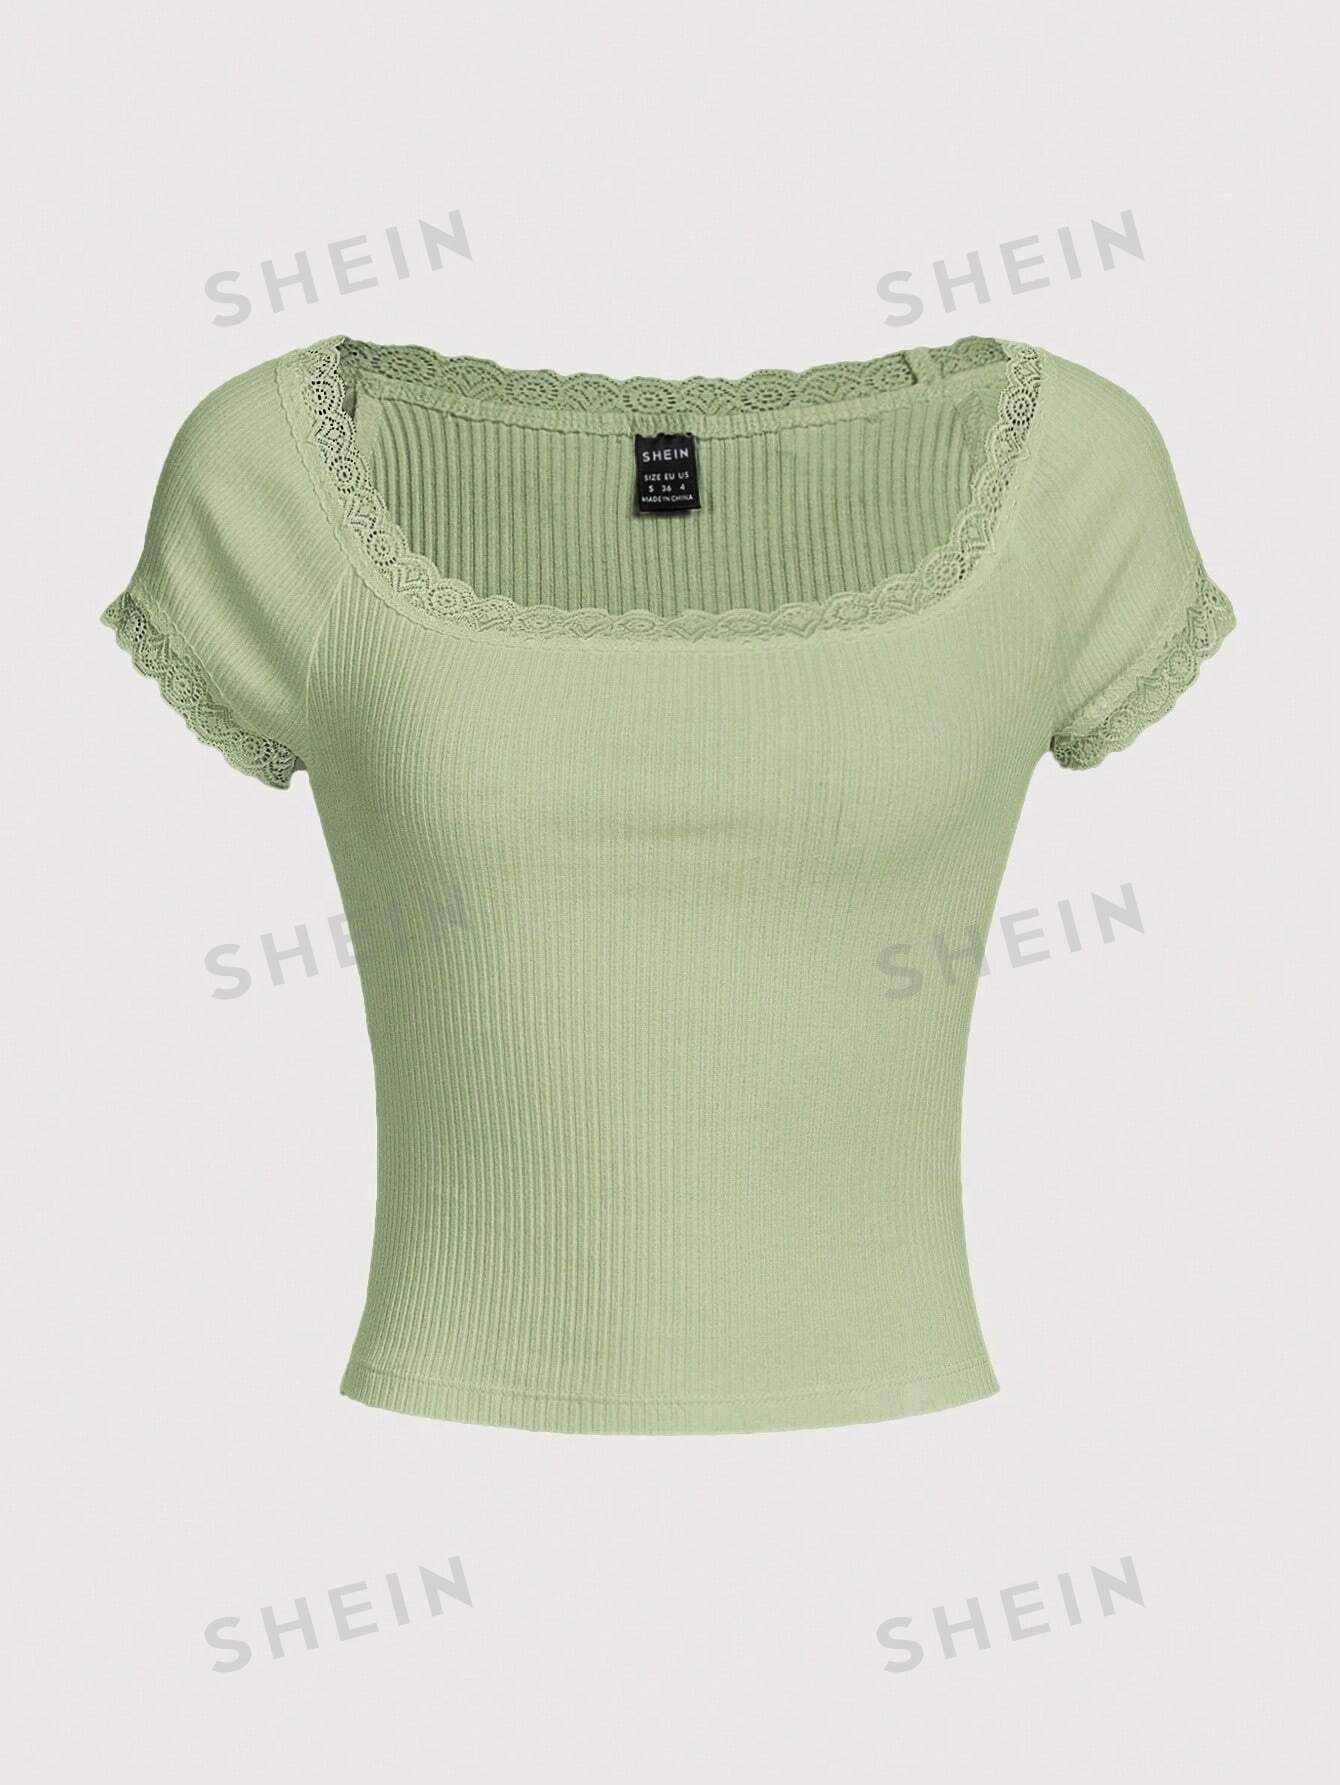 SHEIN Qutie Женская трикотажная футболка с короткими рукавами и кружевным краем, мятно-зеленый